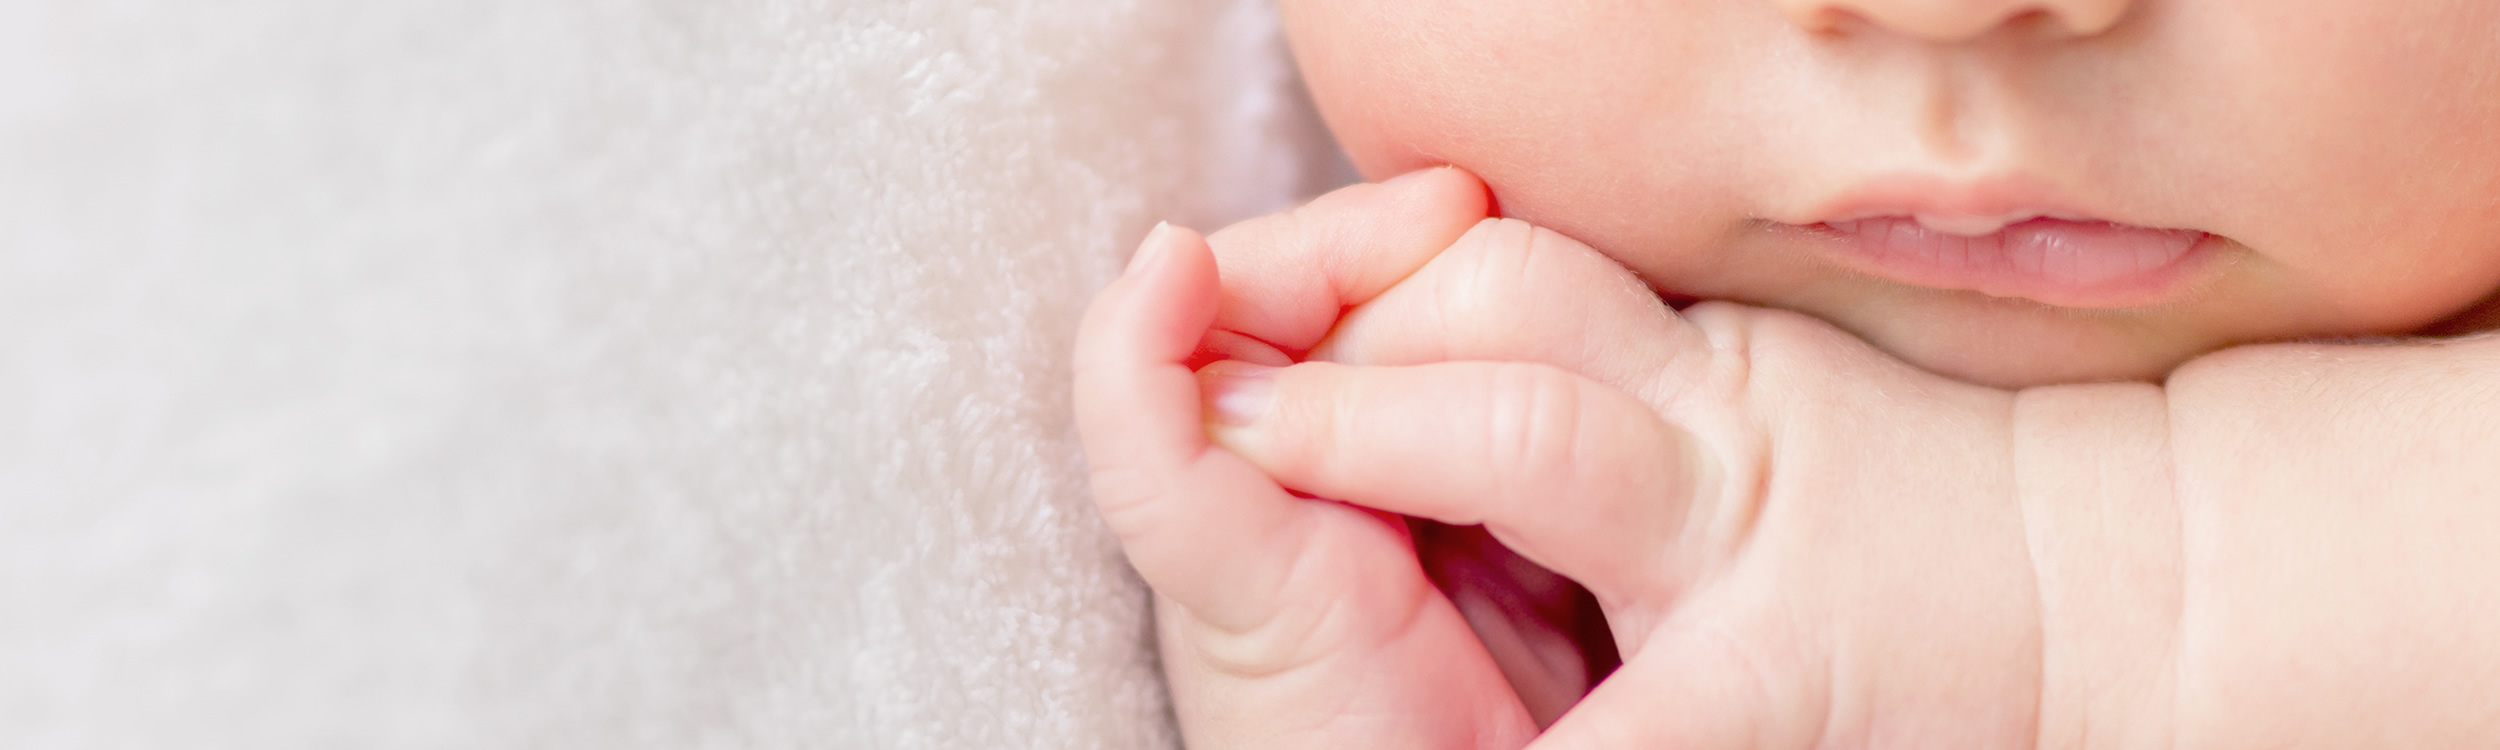 La peau de bébé est fragile : comment en prendre soin ?